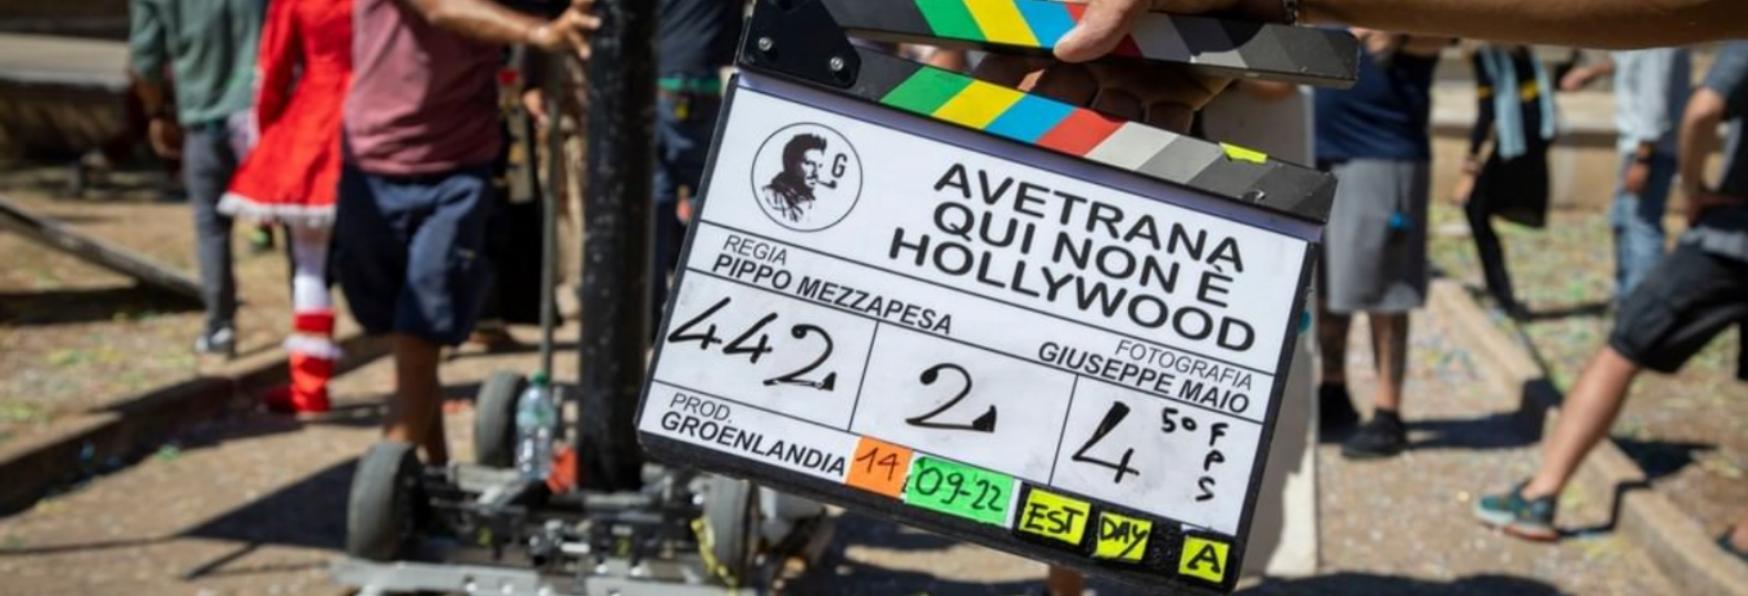 Avetrana - Qui non è Hollywood: Disney+ annuncia la nuova Serie TV Italiana